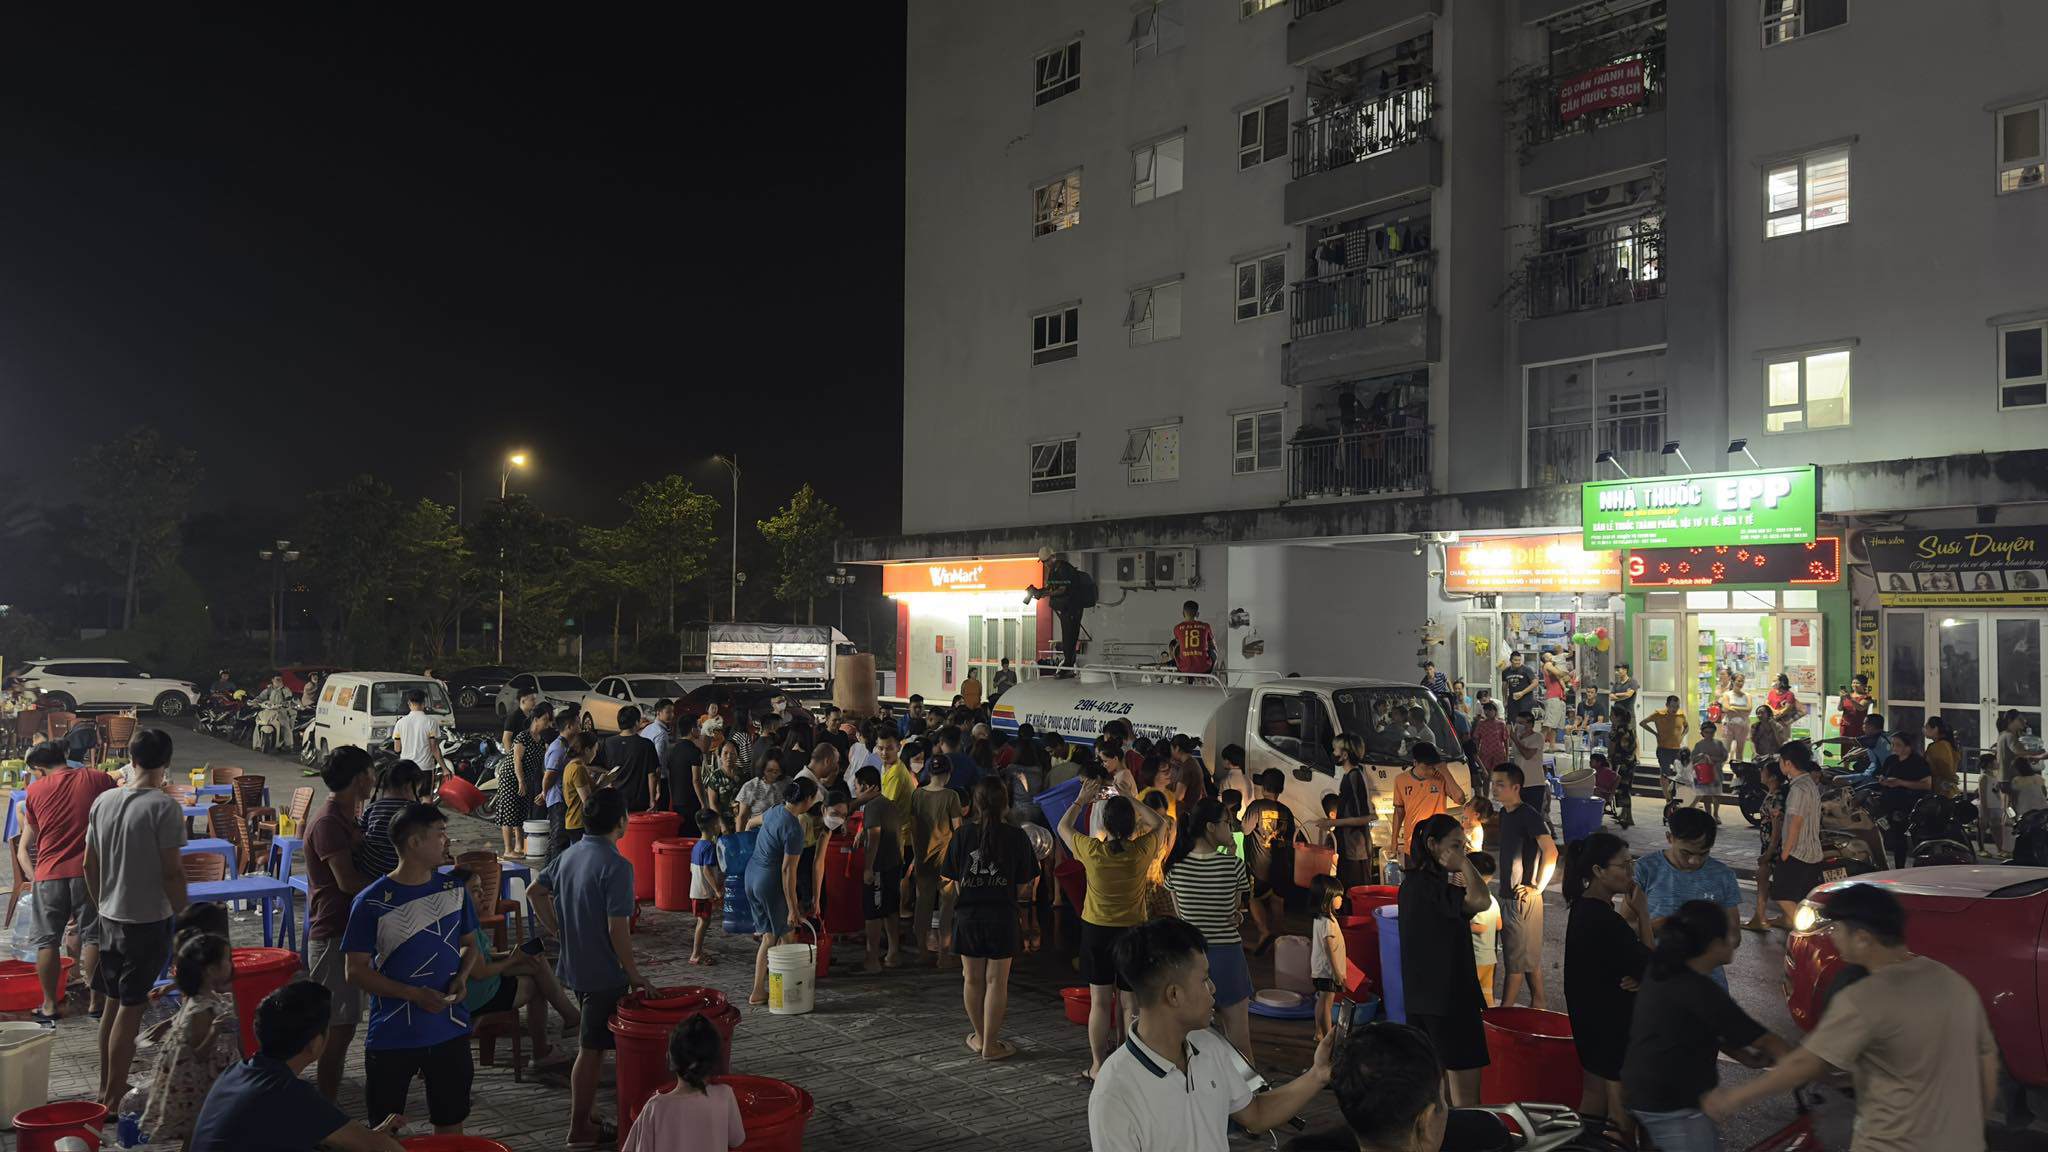 23h đêm cư dân ở Hà Nội xếp hàng chờ lấy vài lít nước sạch: 